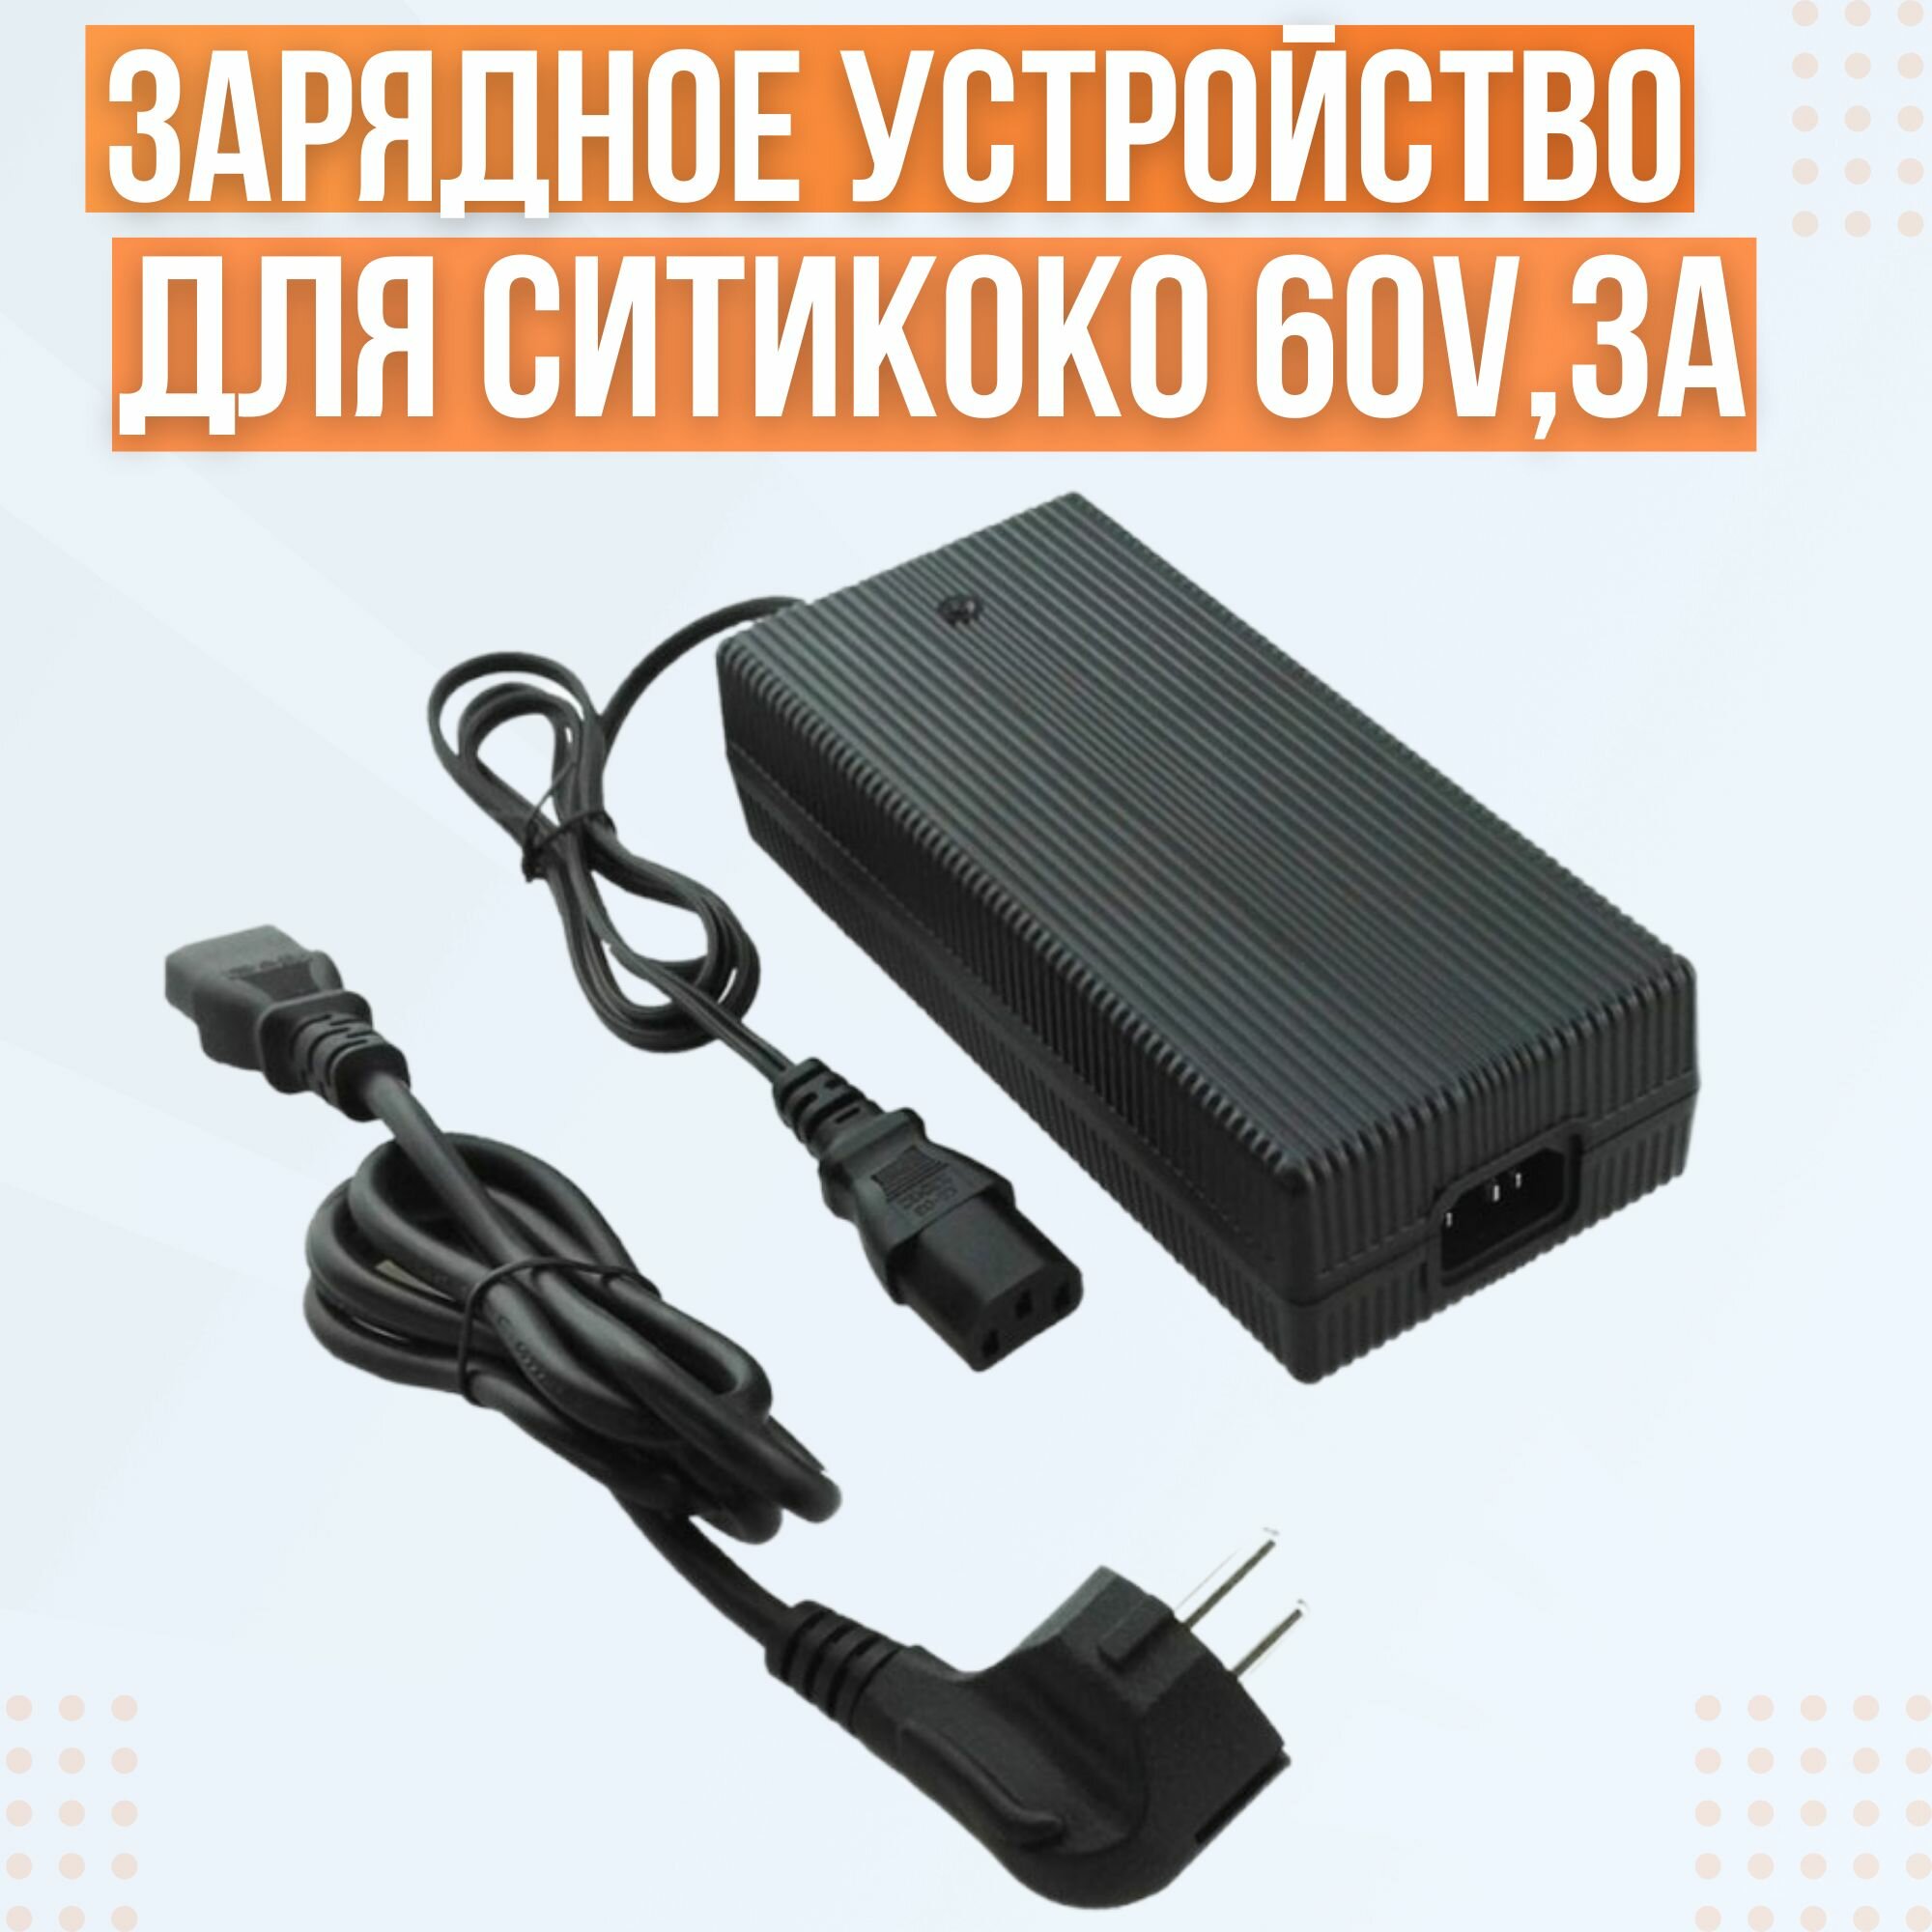 Зарядное устройство для Ситикоко 60V,3А